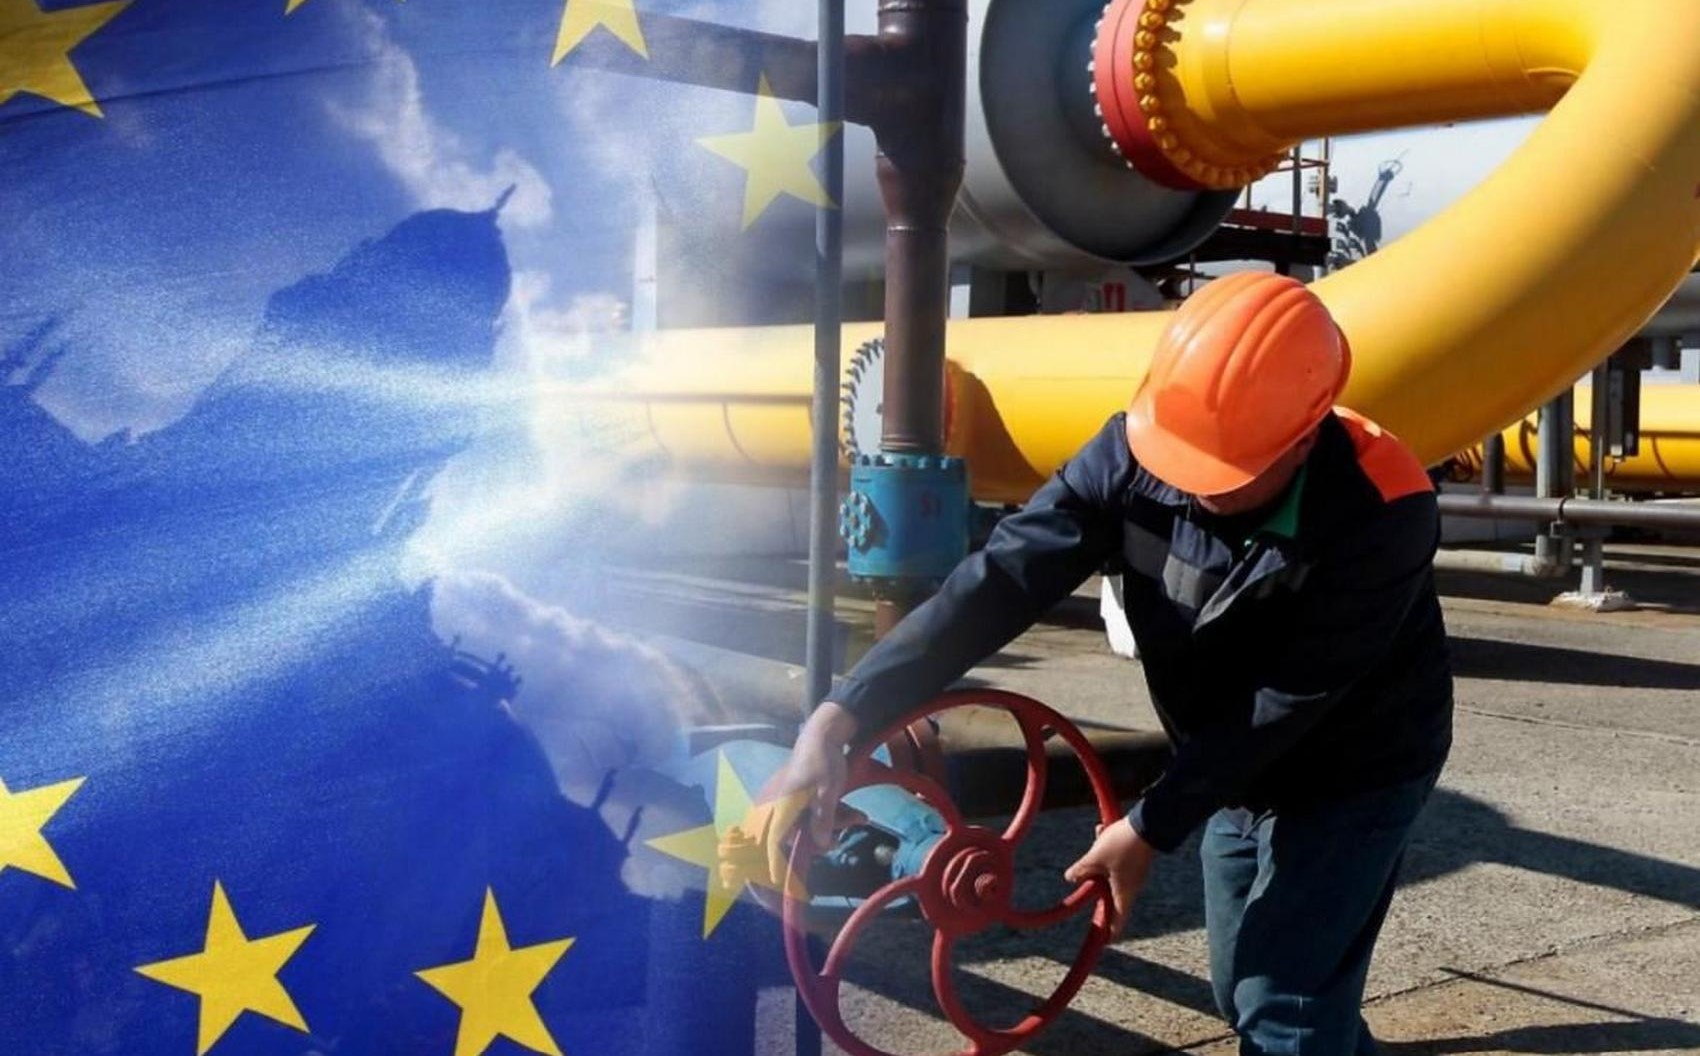 Бельгия выступила за введение ограничения цен на весь импортируемый в ЕС газ, а не только на российский